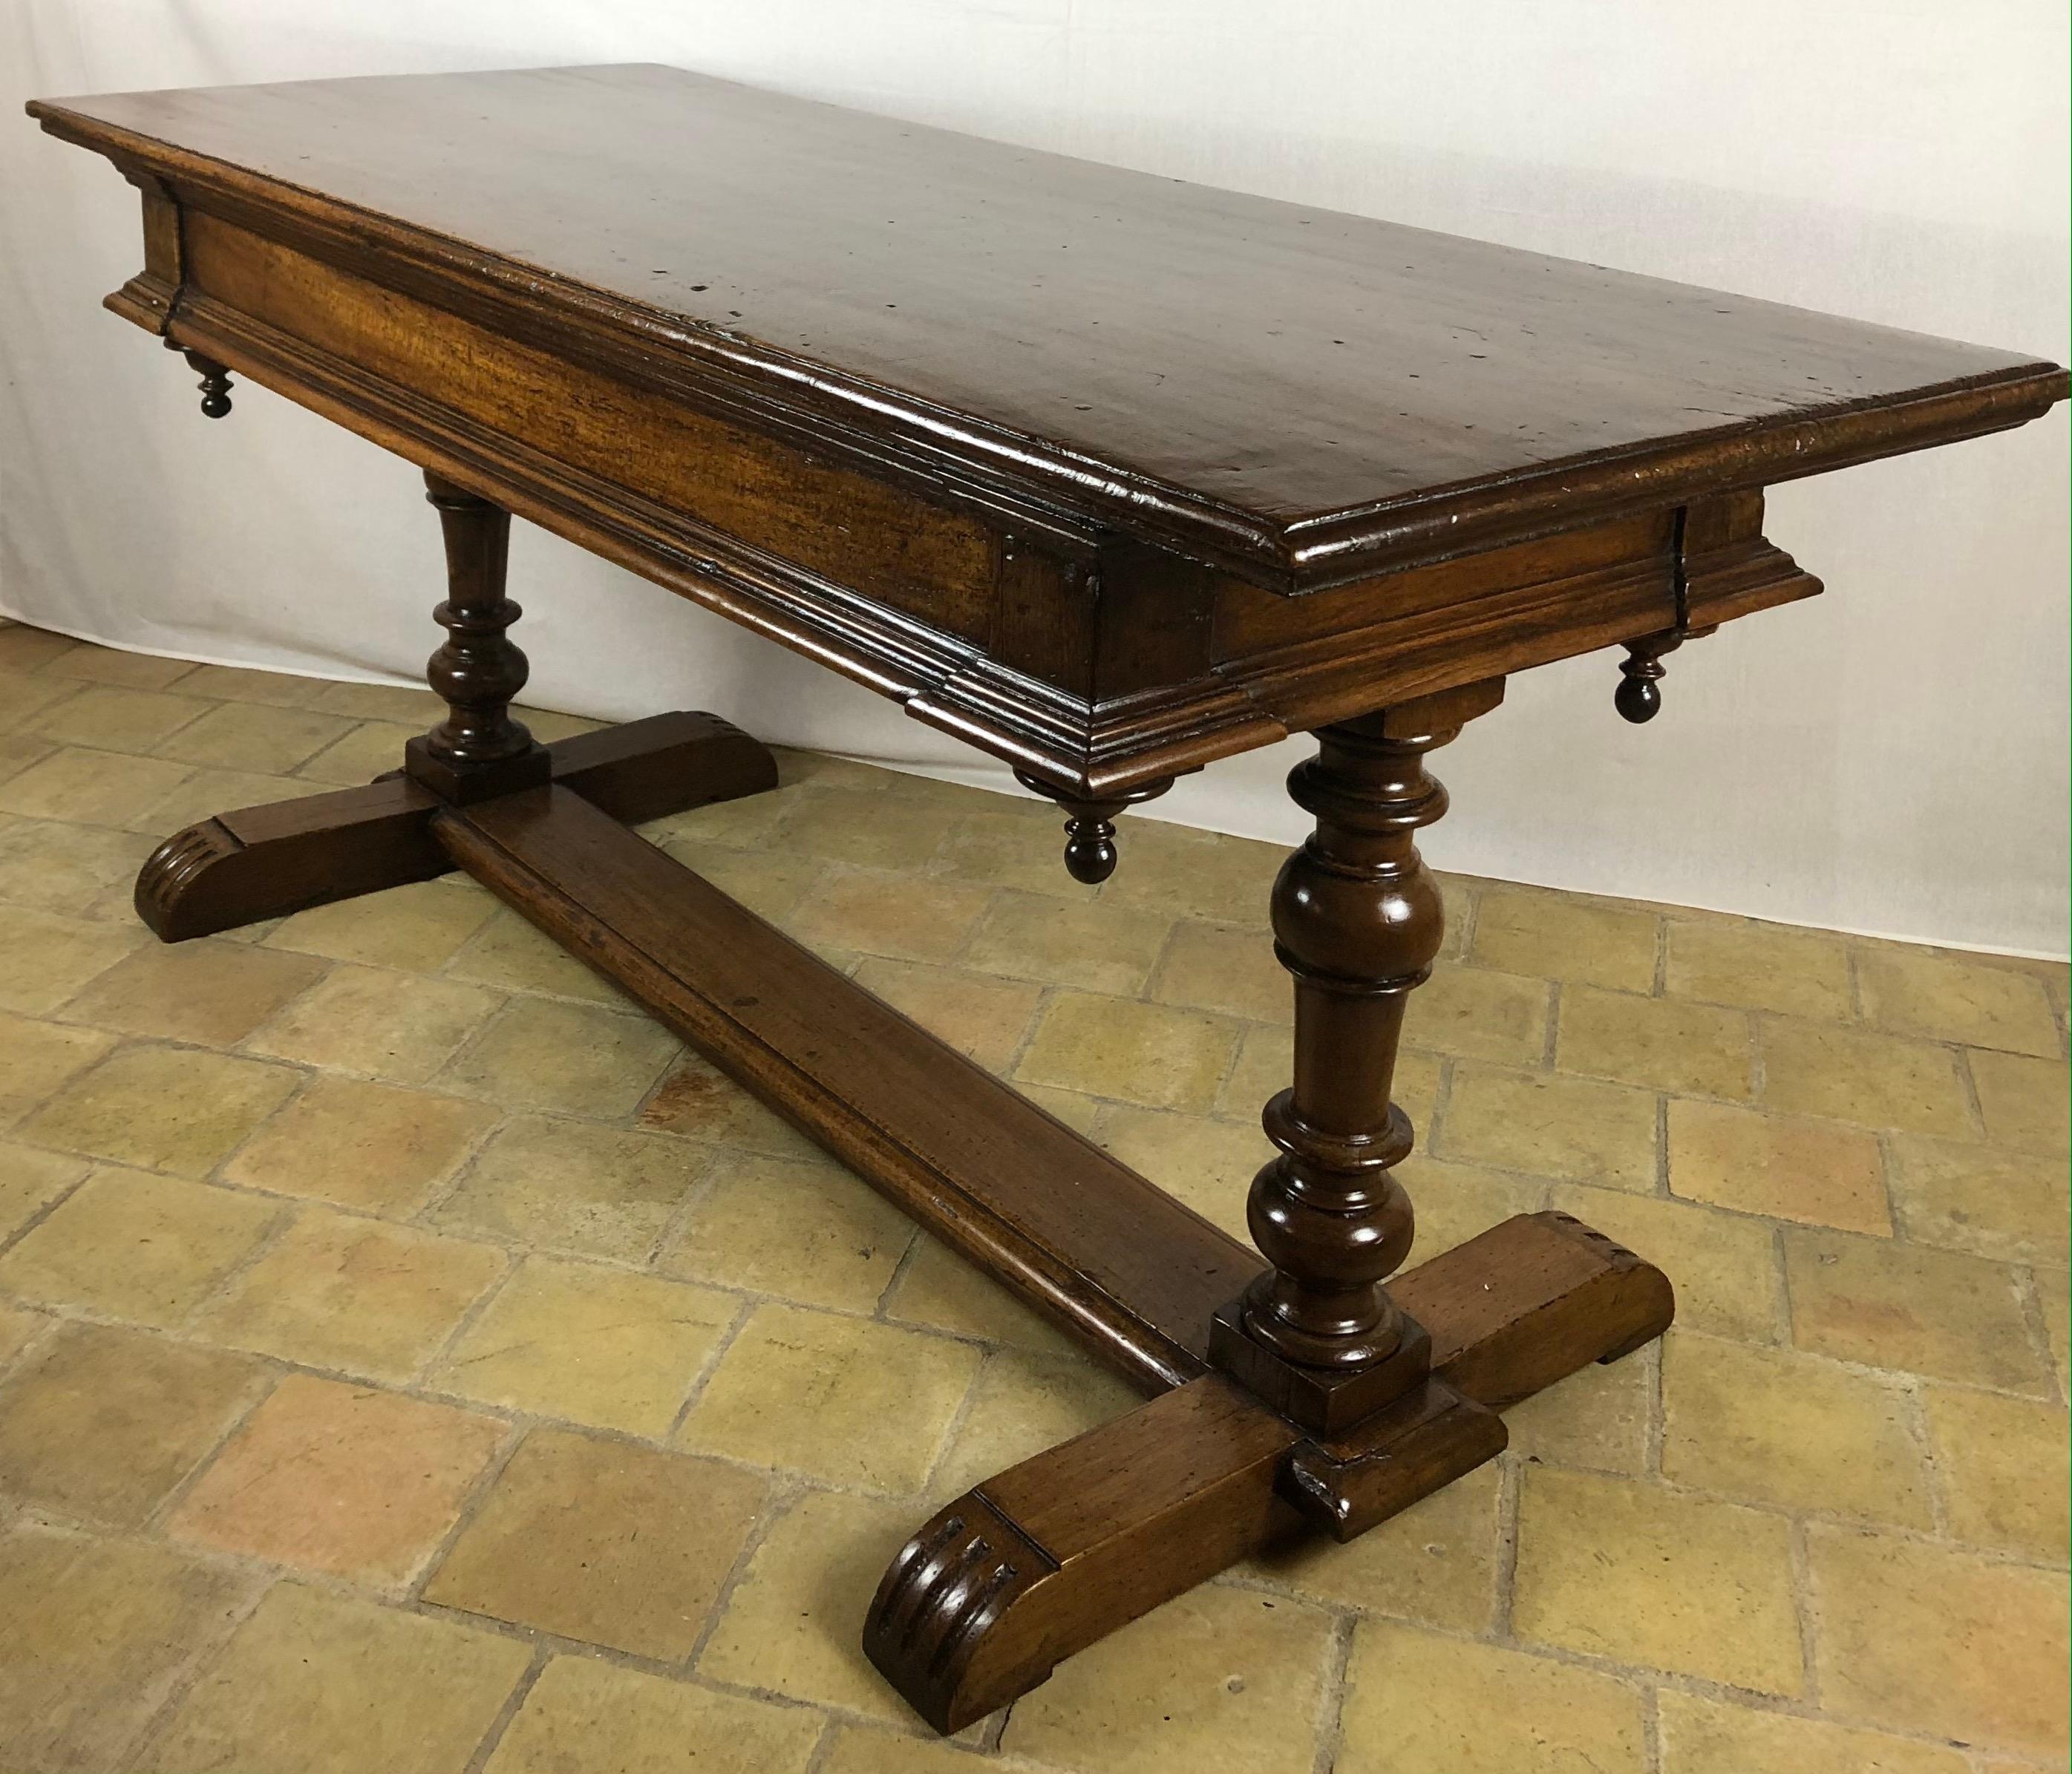 Console de canapé rectangulaire de style Louis XIII du 18ème siècle de très bonne qualité. Cette table est fabriquée en bois de noyer robuste et est une table multifonctionnelle. Elle est surélevée par deux beaux pieds tournés et leur brancard